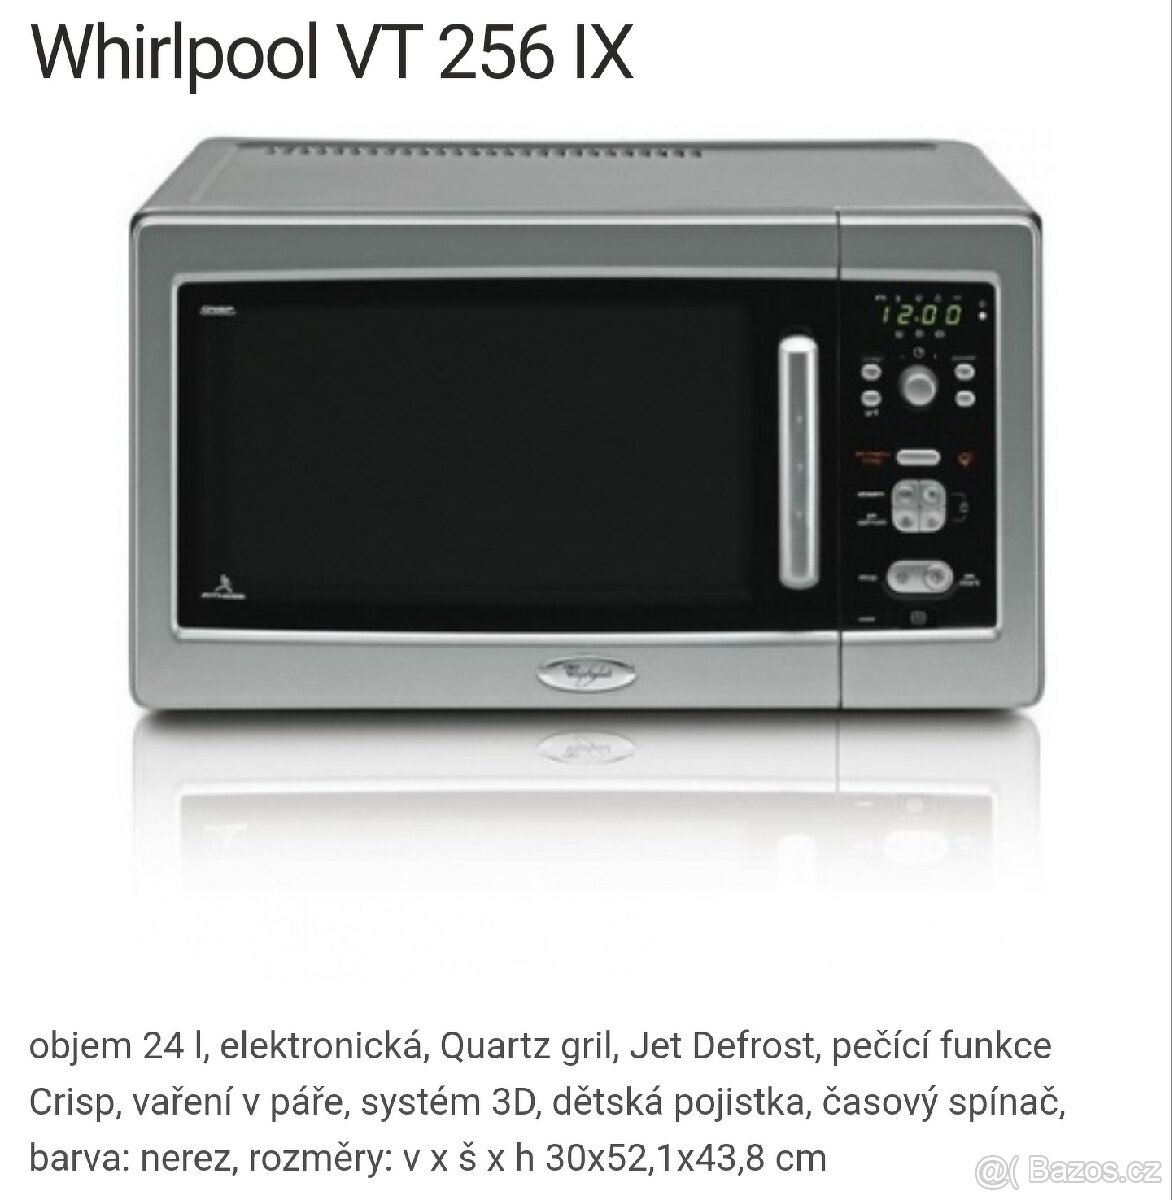 Prodám parní mikrovlnnou troubu Whirpool VT 256 IX